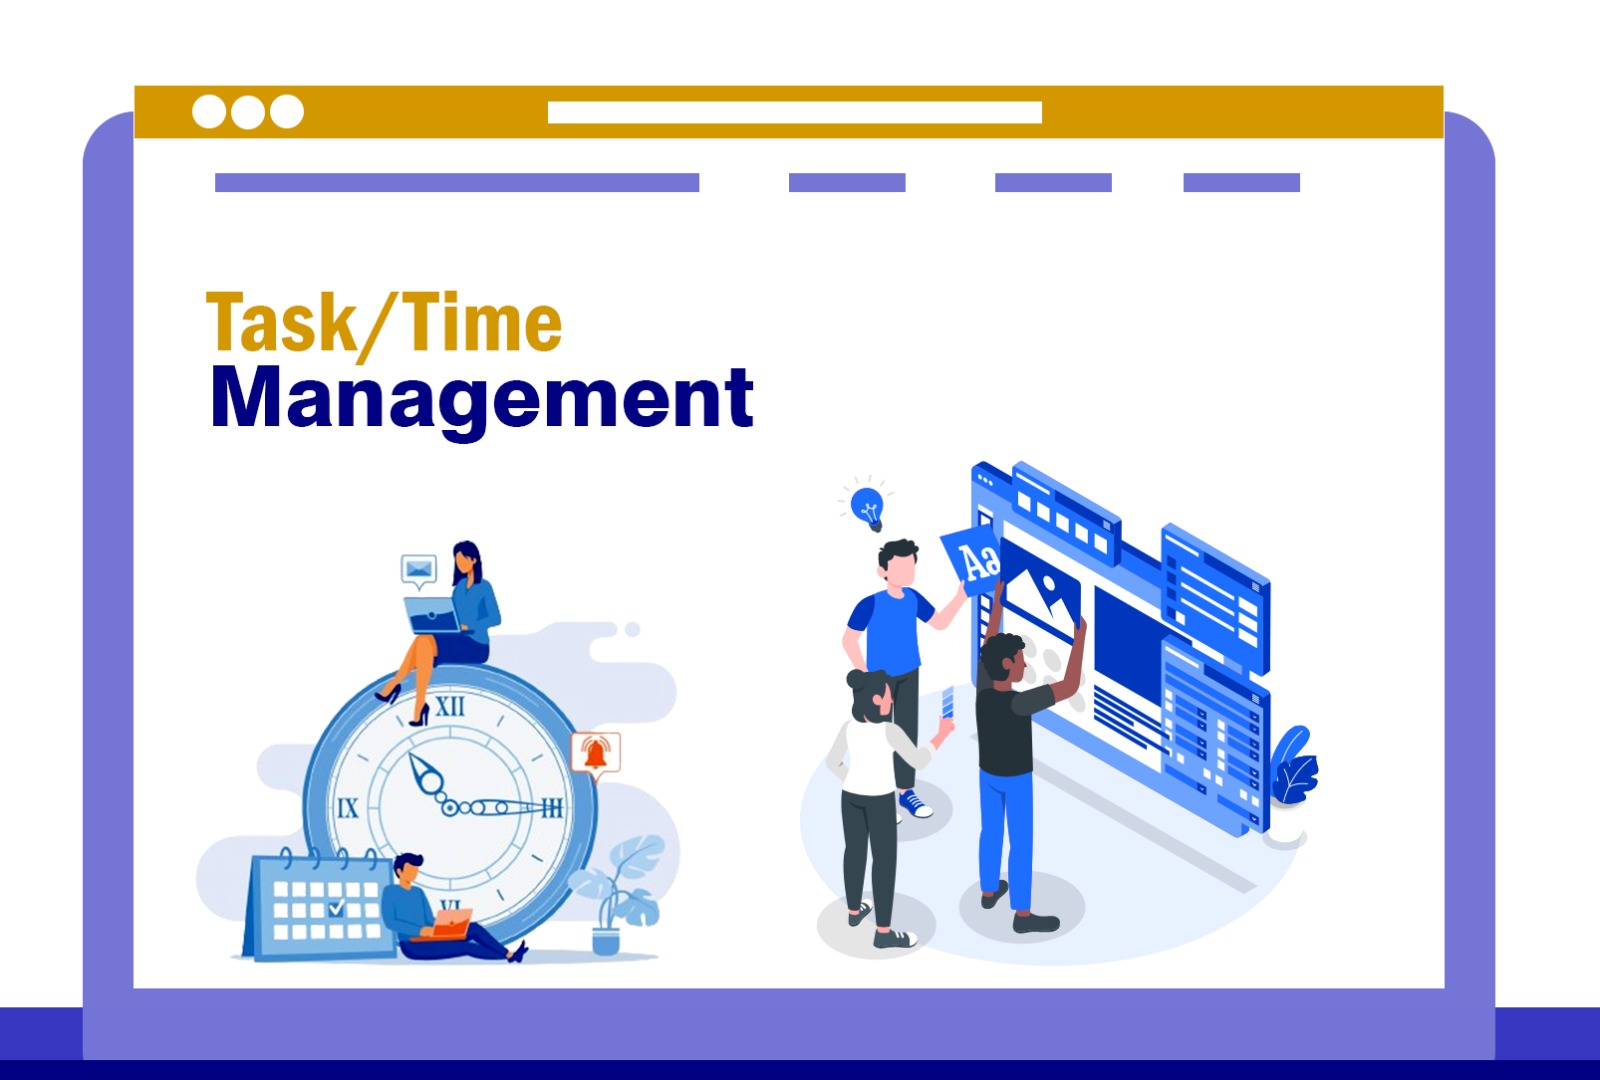 Task/Time Management